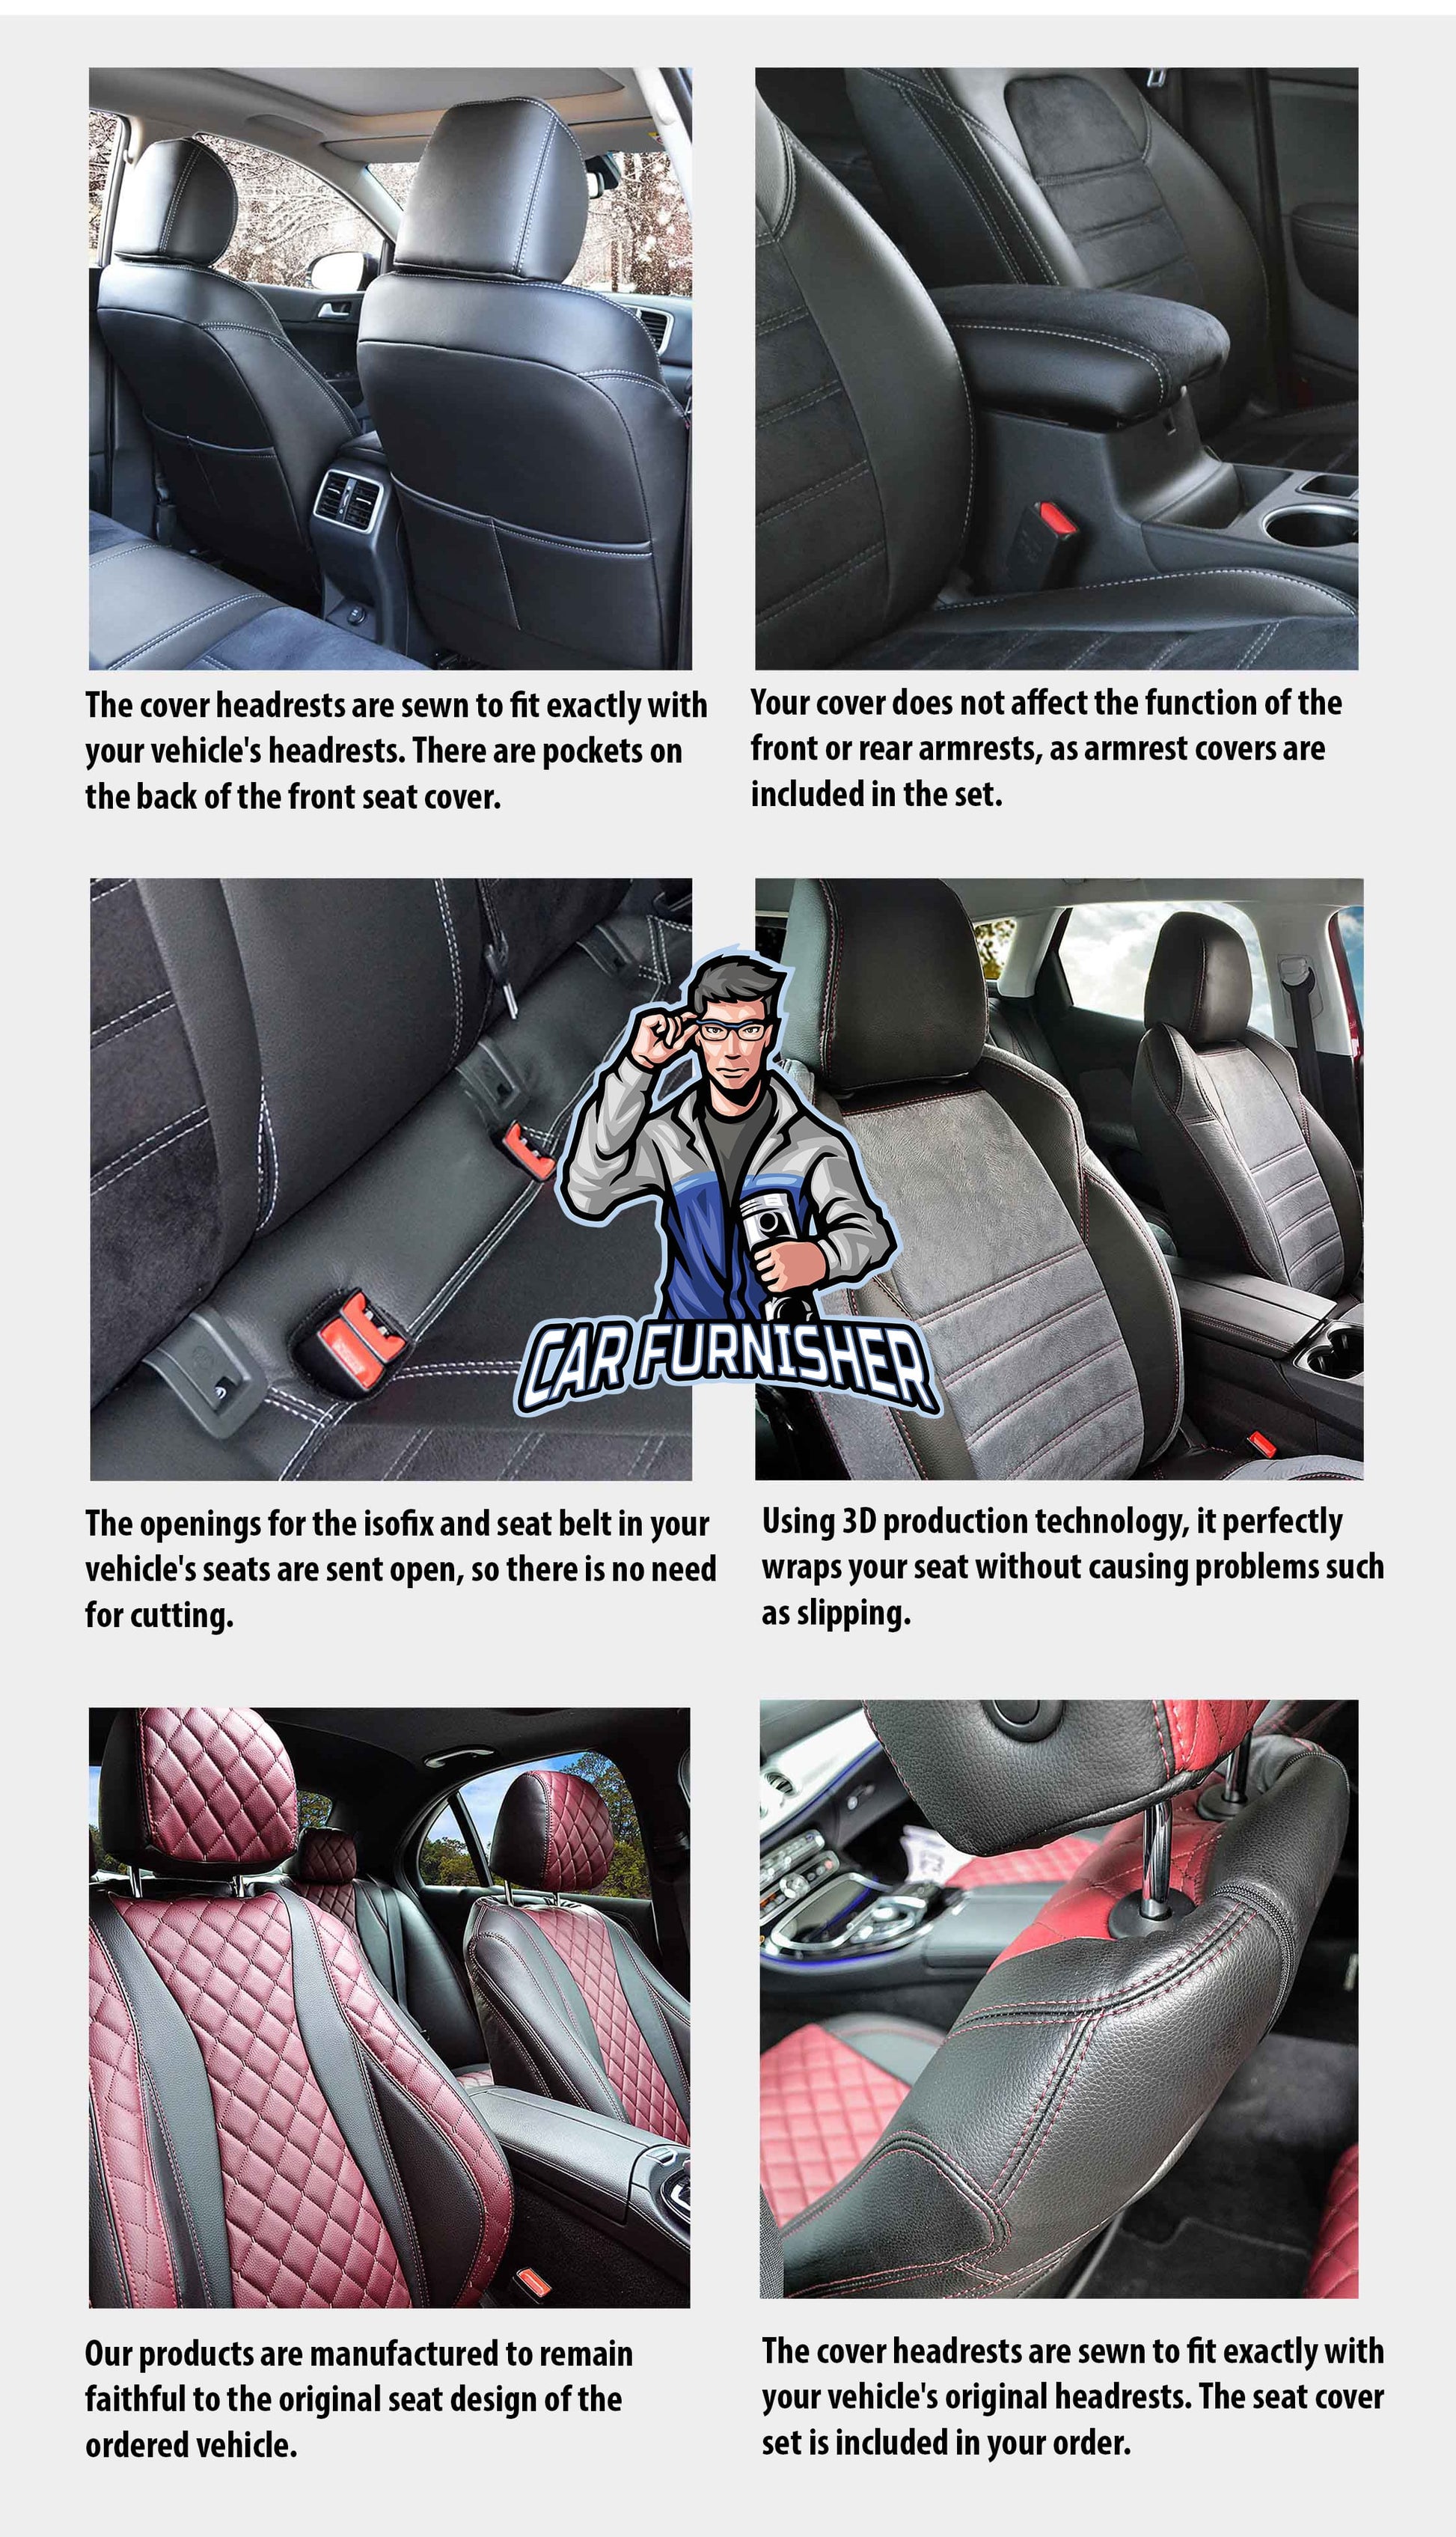 Audi A4 Seat Cover Original Jacquard Design Beige Jacquard Fabric